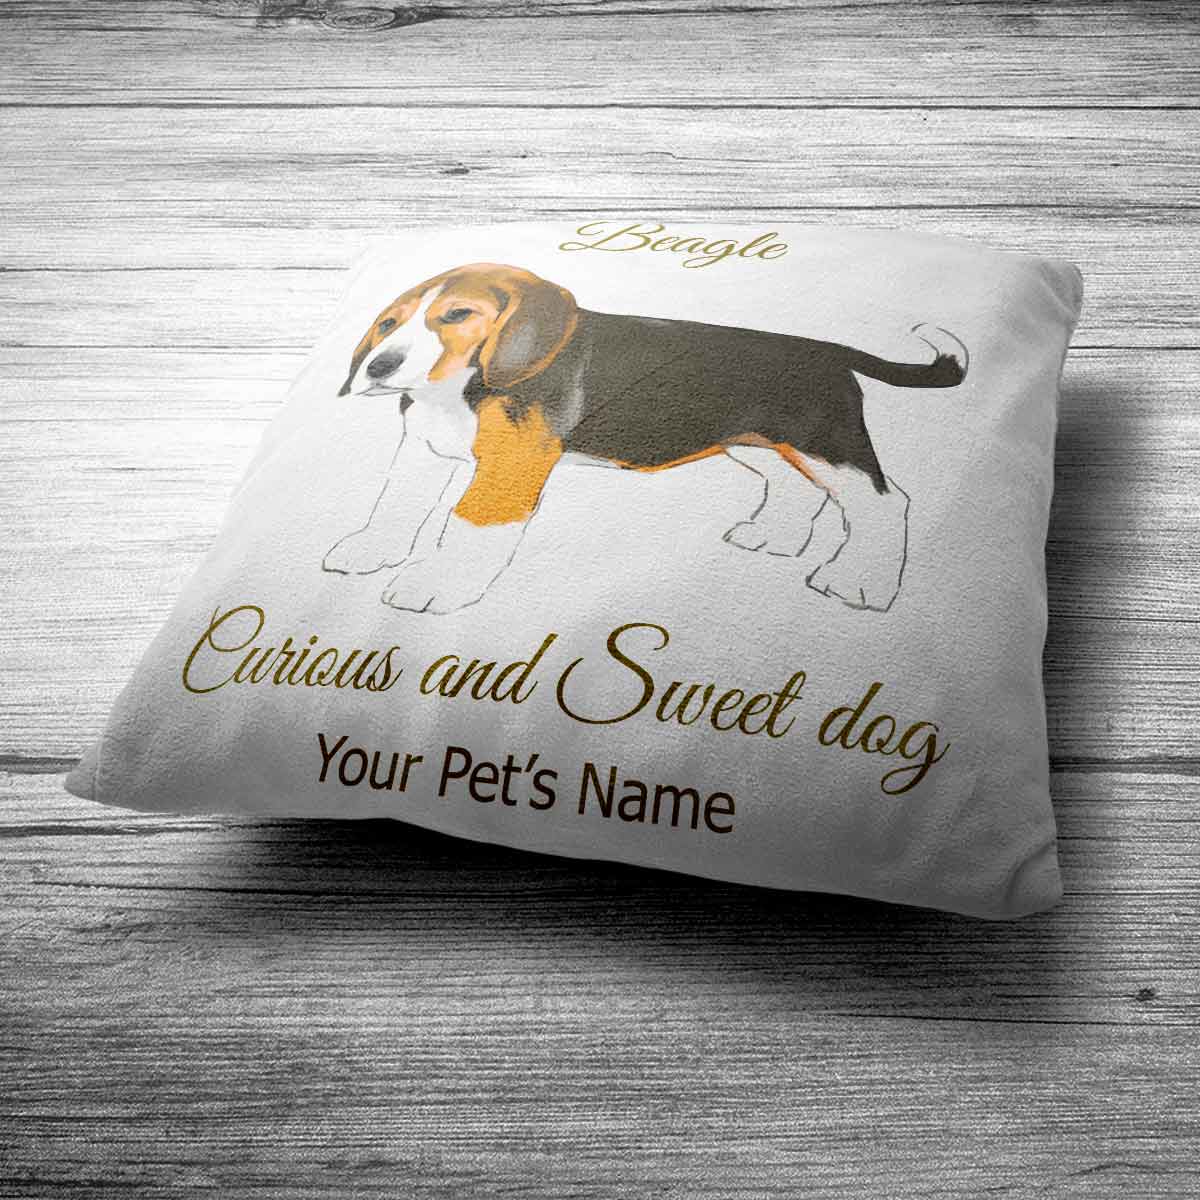 Personalised Beagle Cushion